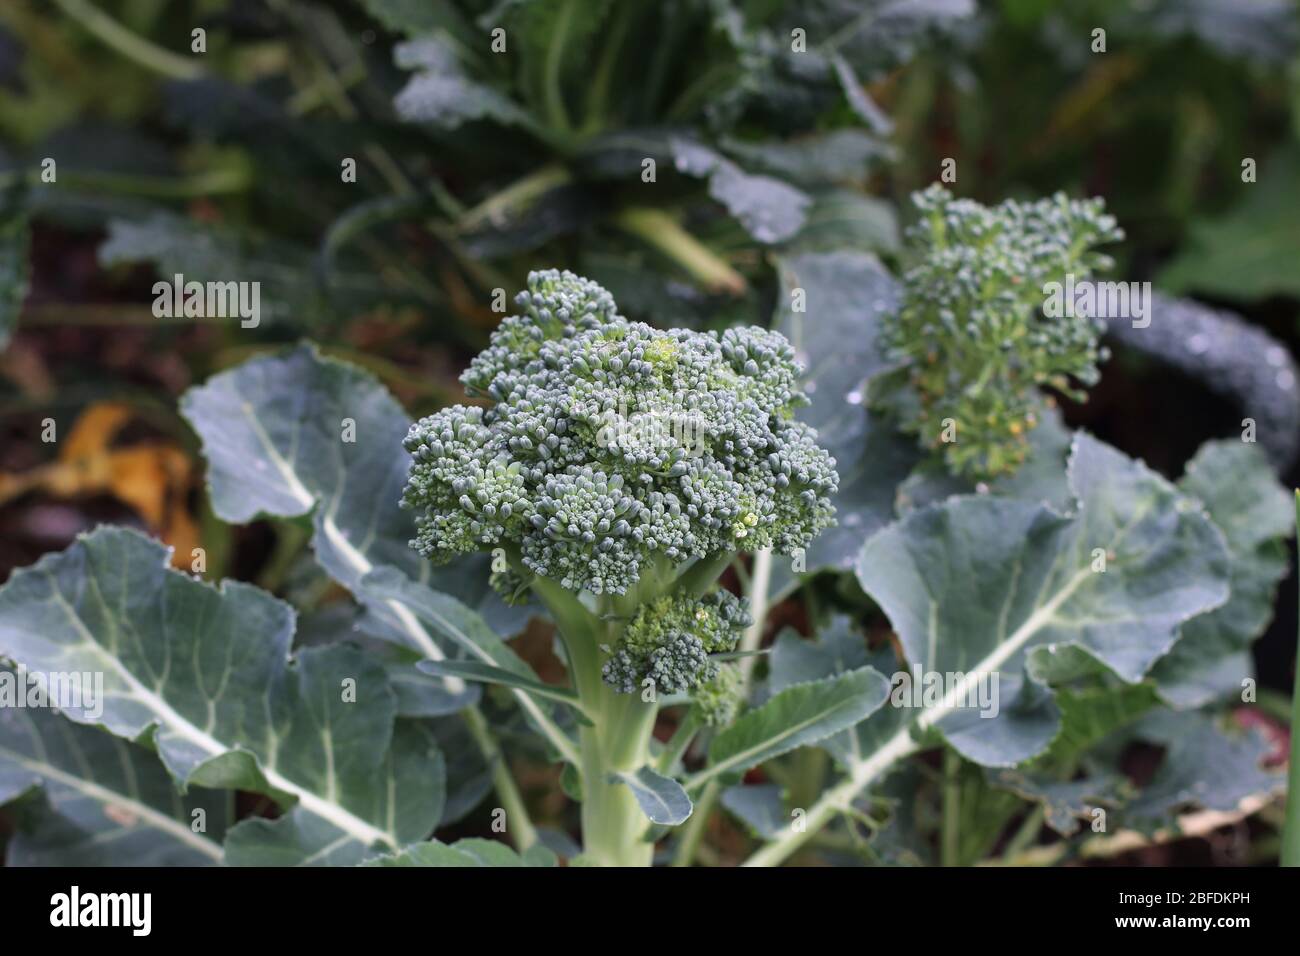 Brokkoli auf einem Gemüsepflaster anbauen - Stockfoto